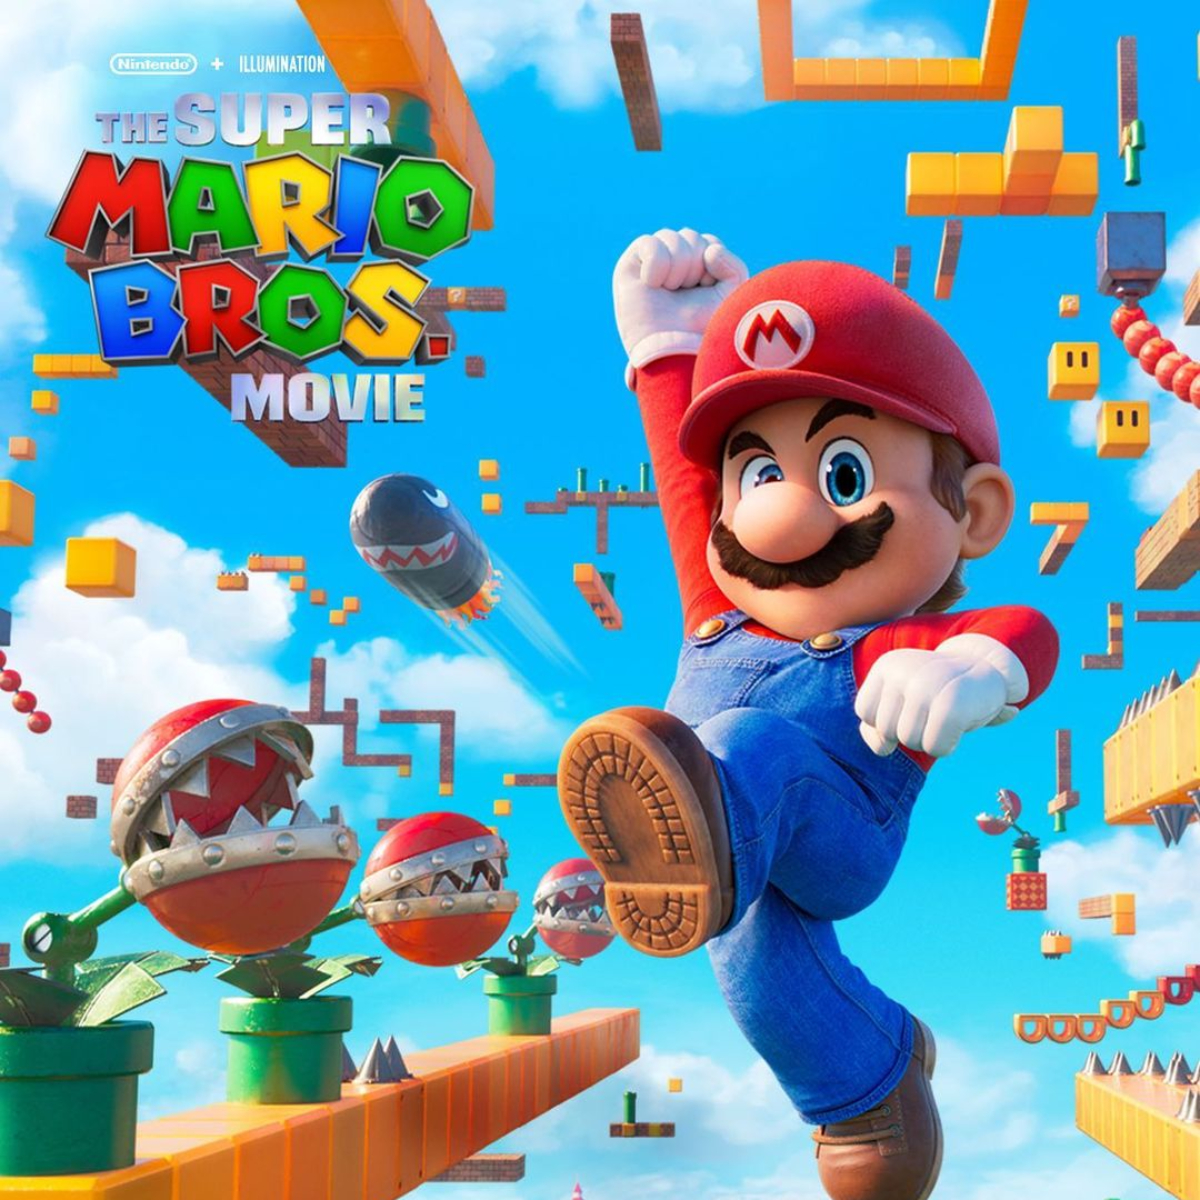 Super Mario Bros La Pelicula  Shigeru Miyamoto, perfil, historia y